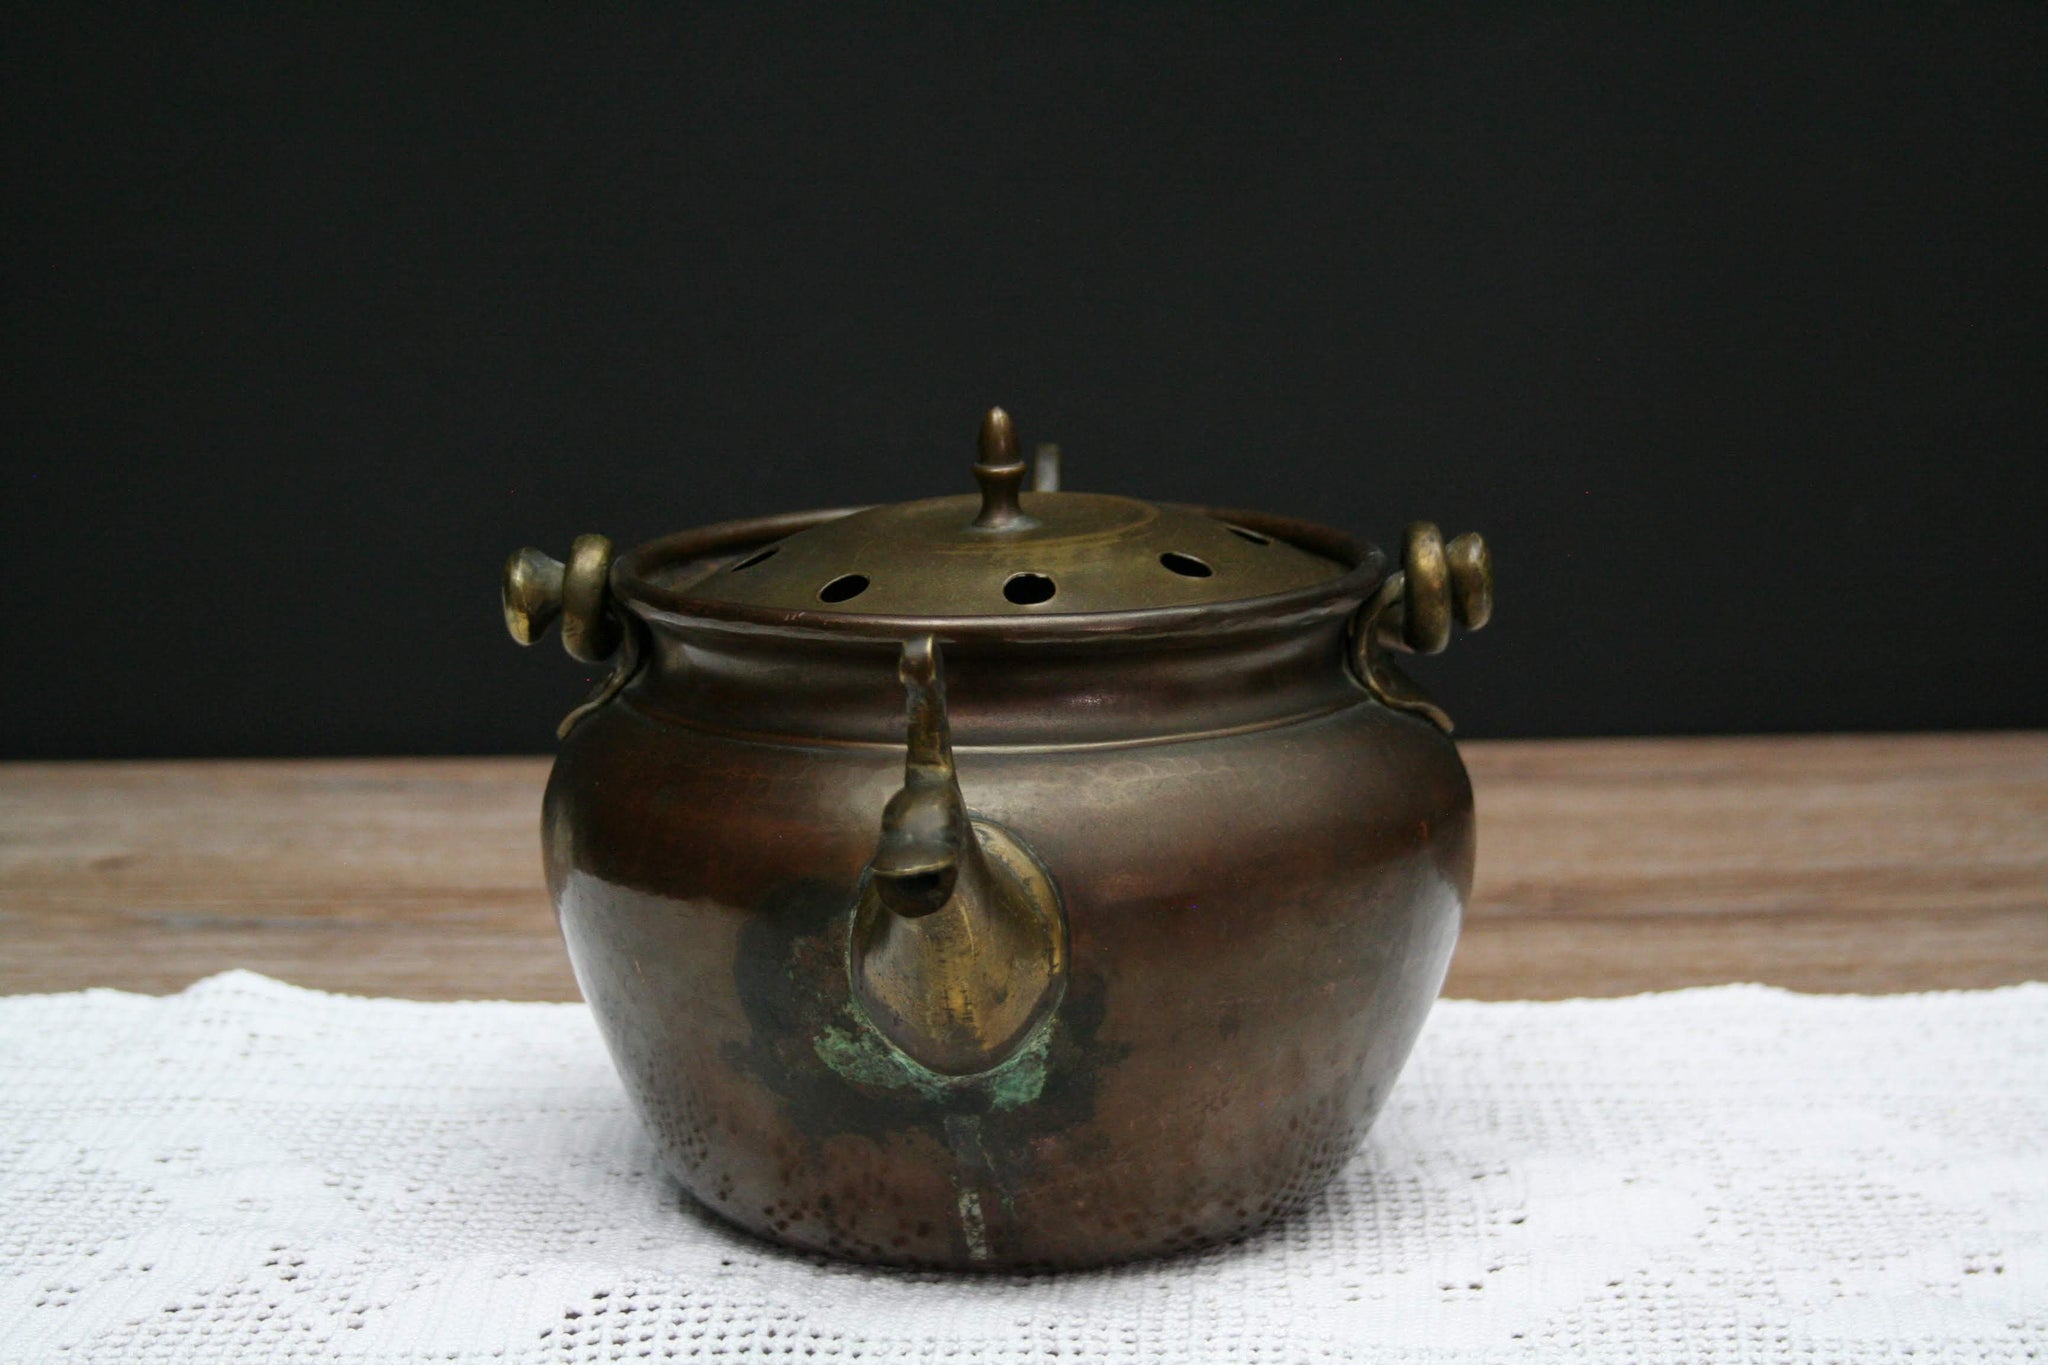 Vintage Copper Tea Kettle With Pewter Spout. Viking Copper M.S.C.O. 